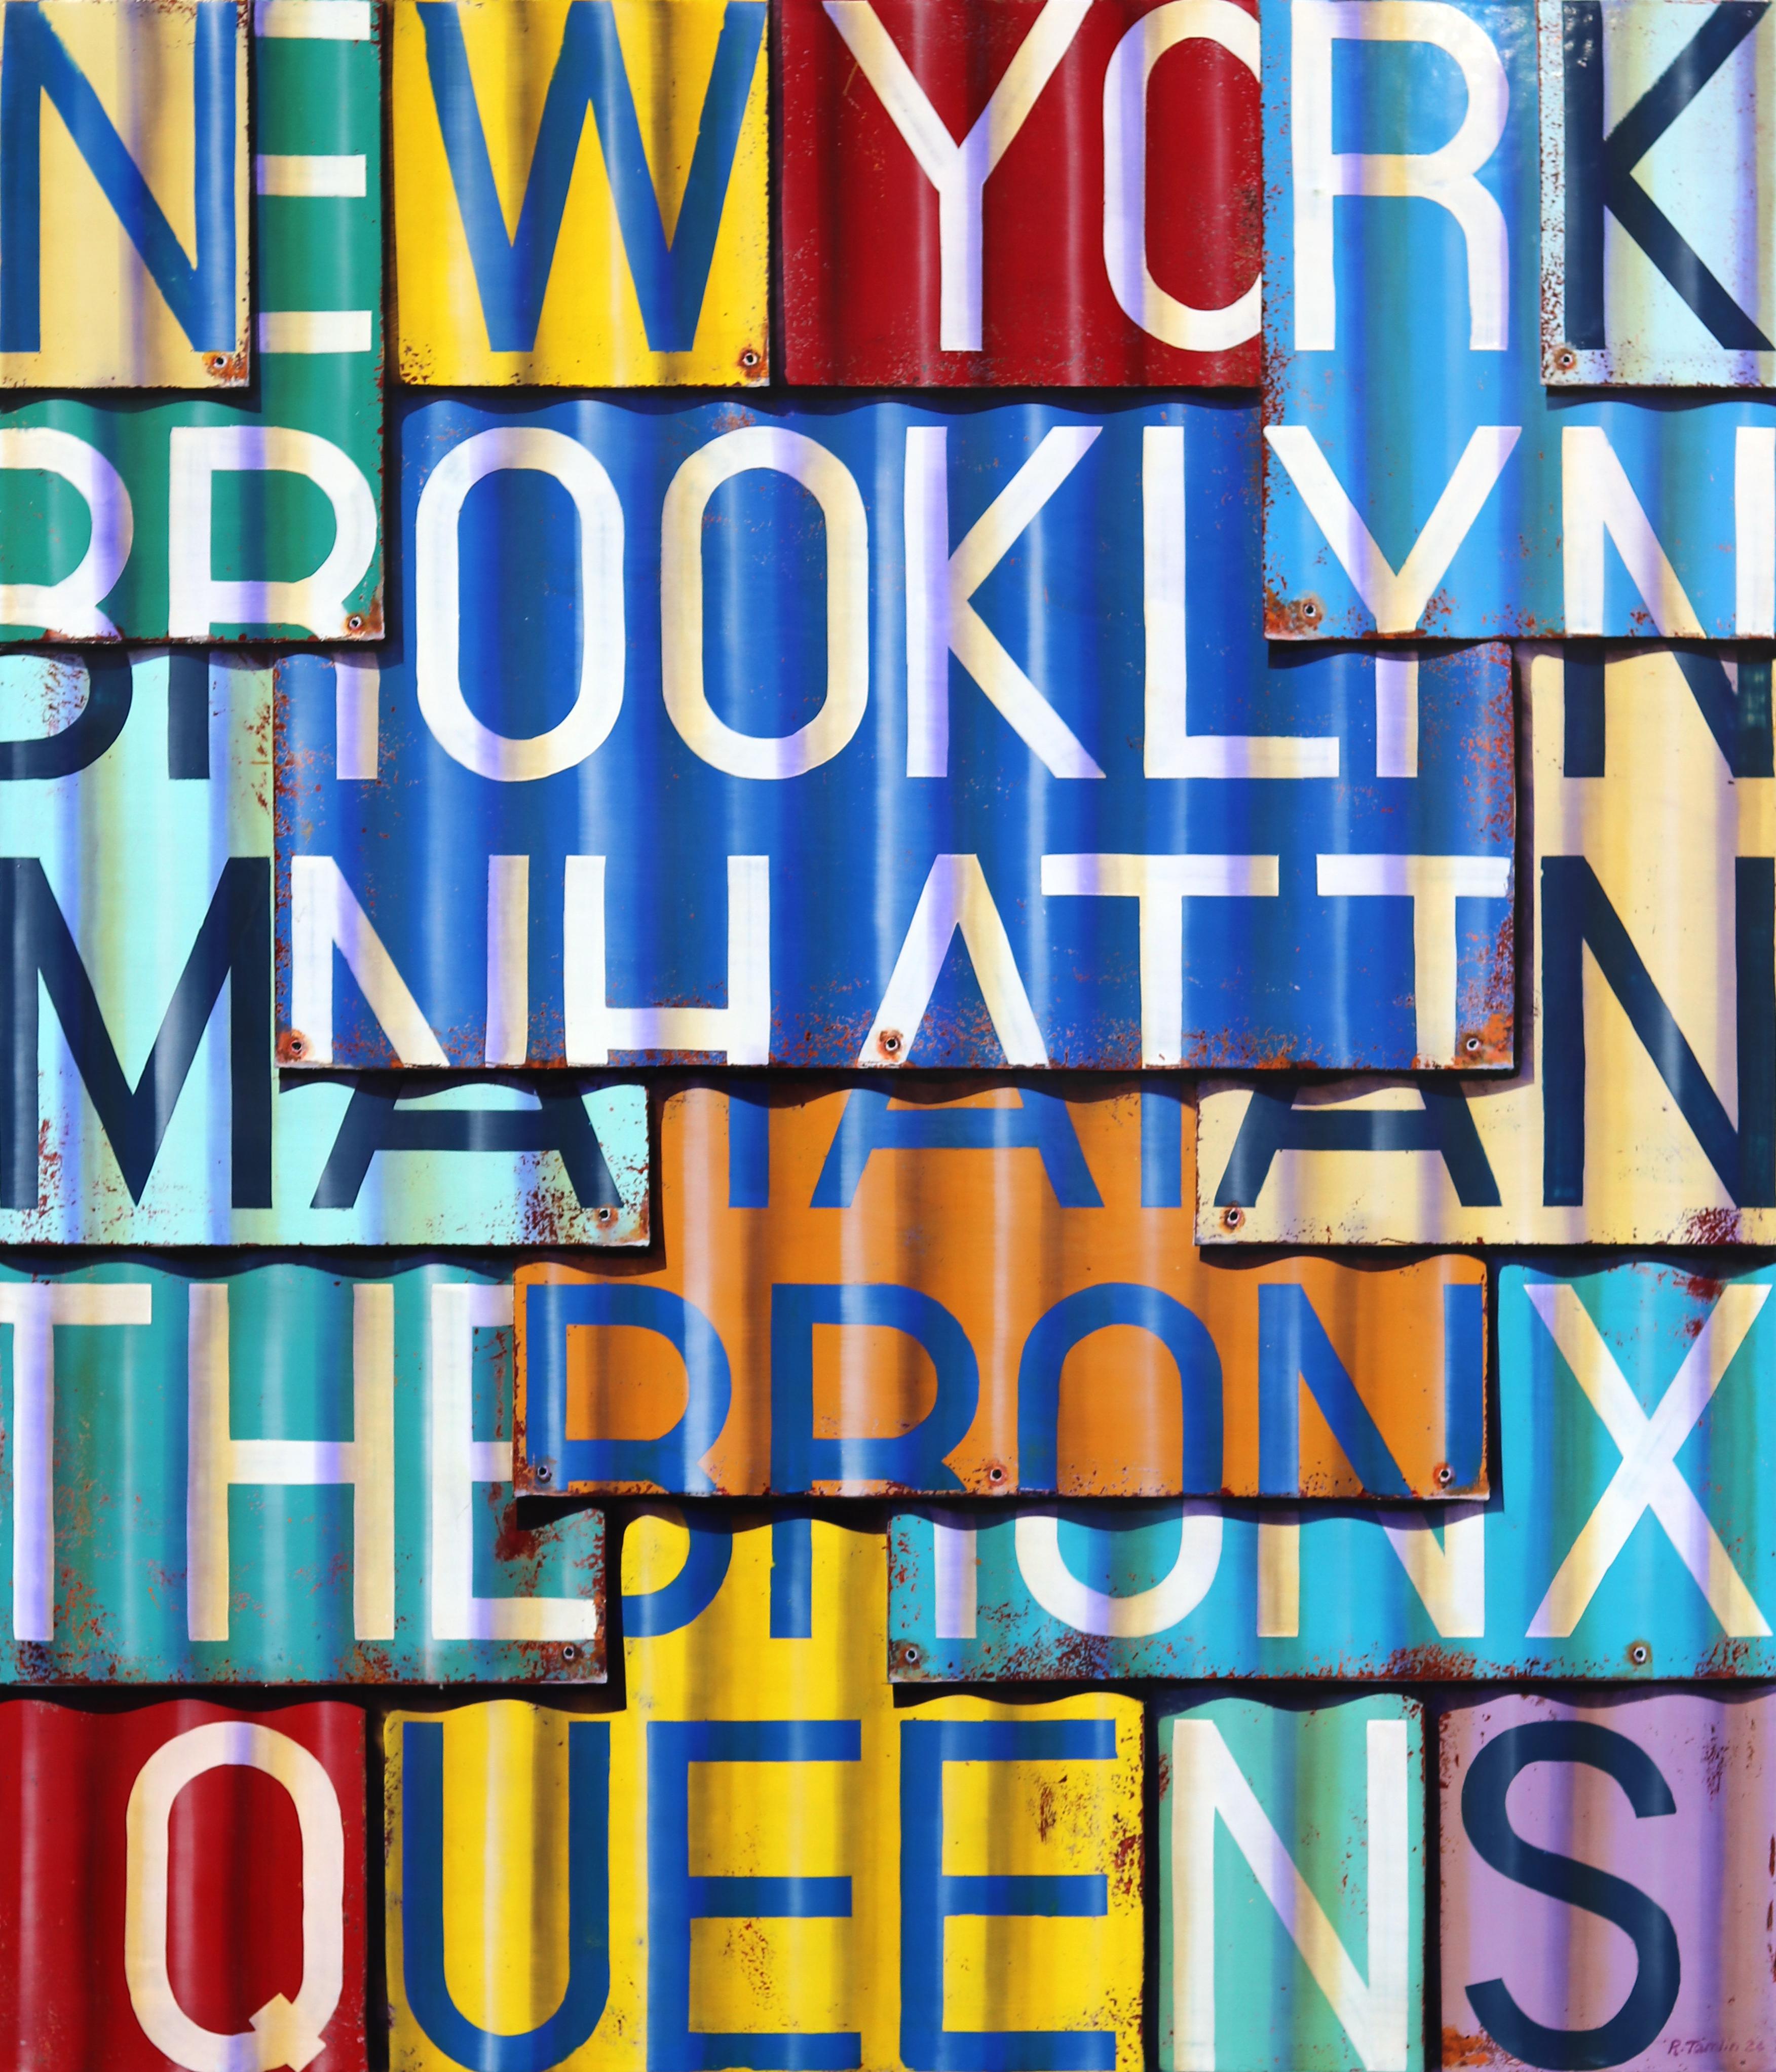 New York City – Fotorealistisches Gemälde in Öl und Emaille auf Leinwand – Mixed Media Art von Ross Tamlin